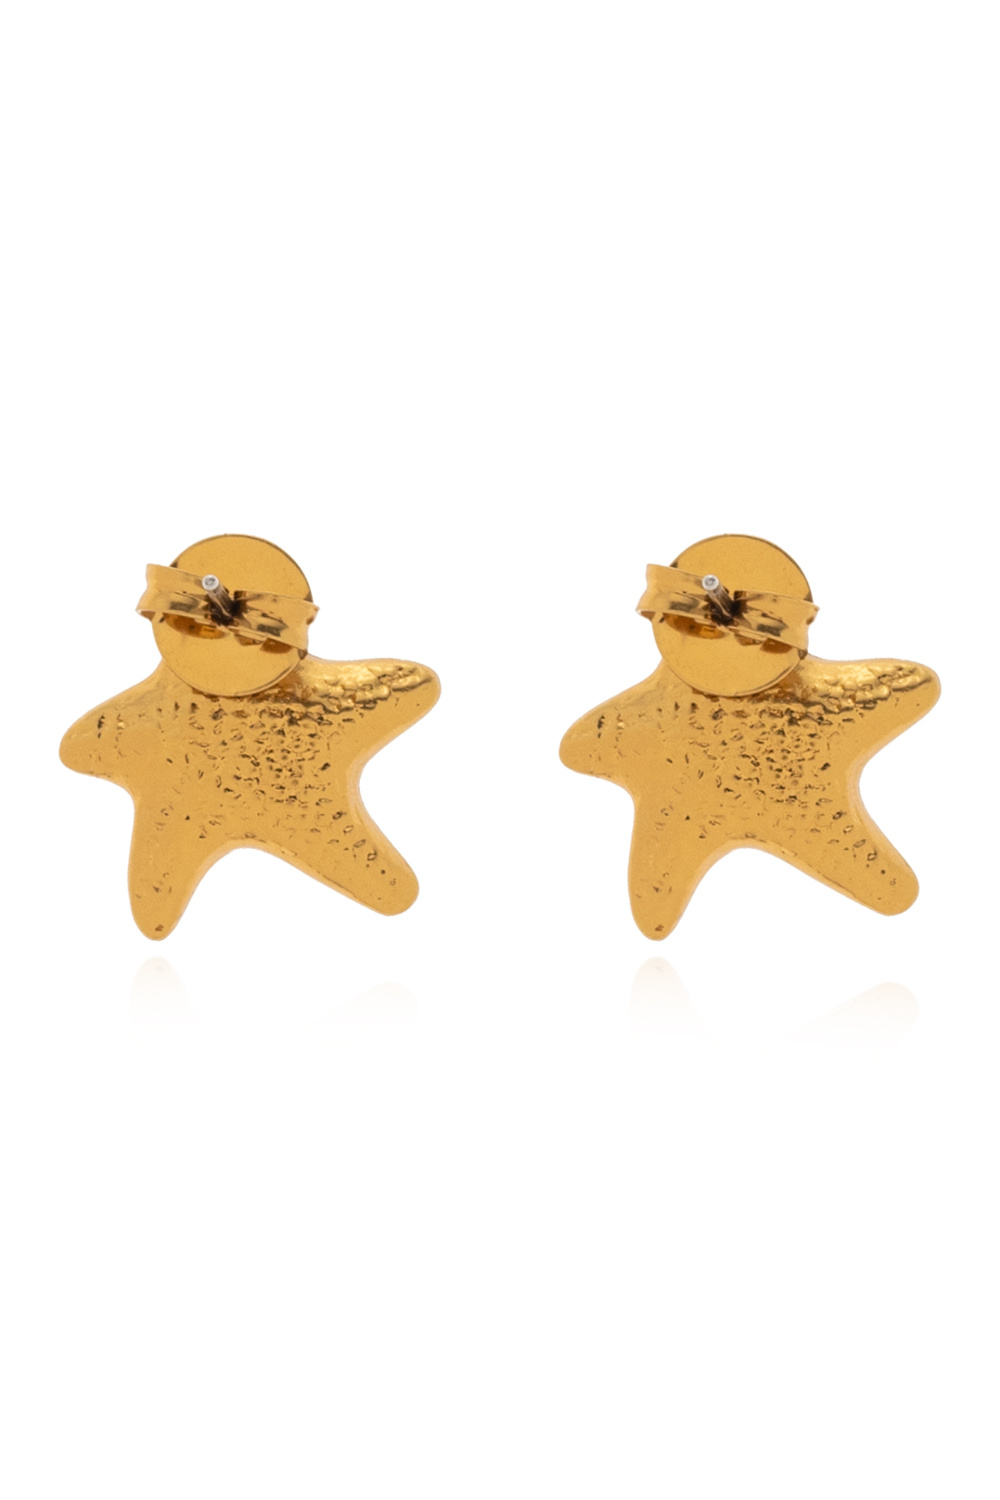 Zimmermann Starfish earrings